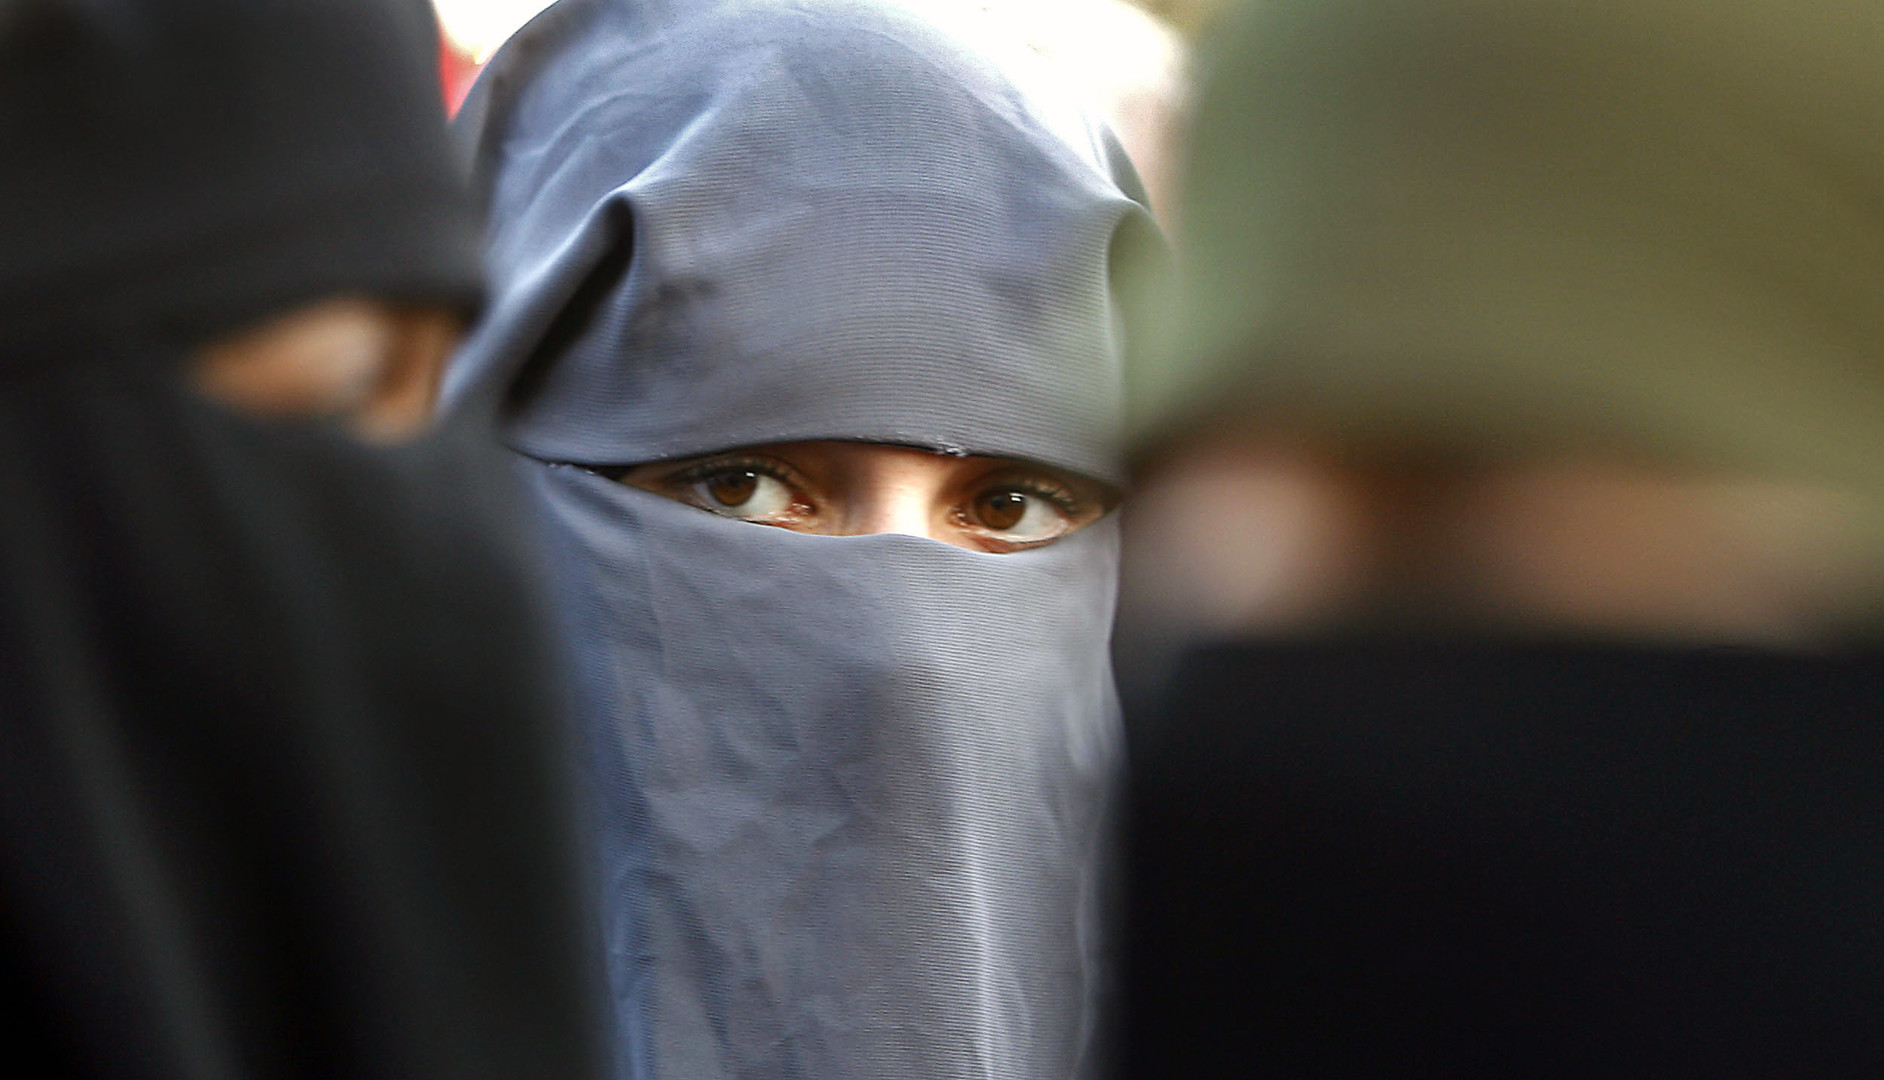 Avocat Linterdiction Du Niqab Symptômatique Dune Montée Des Tensions Au Sein De La Société